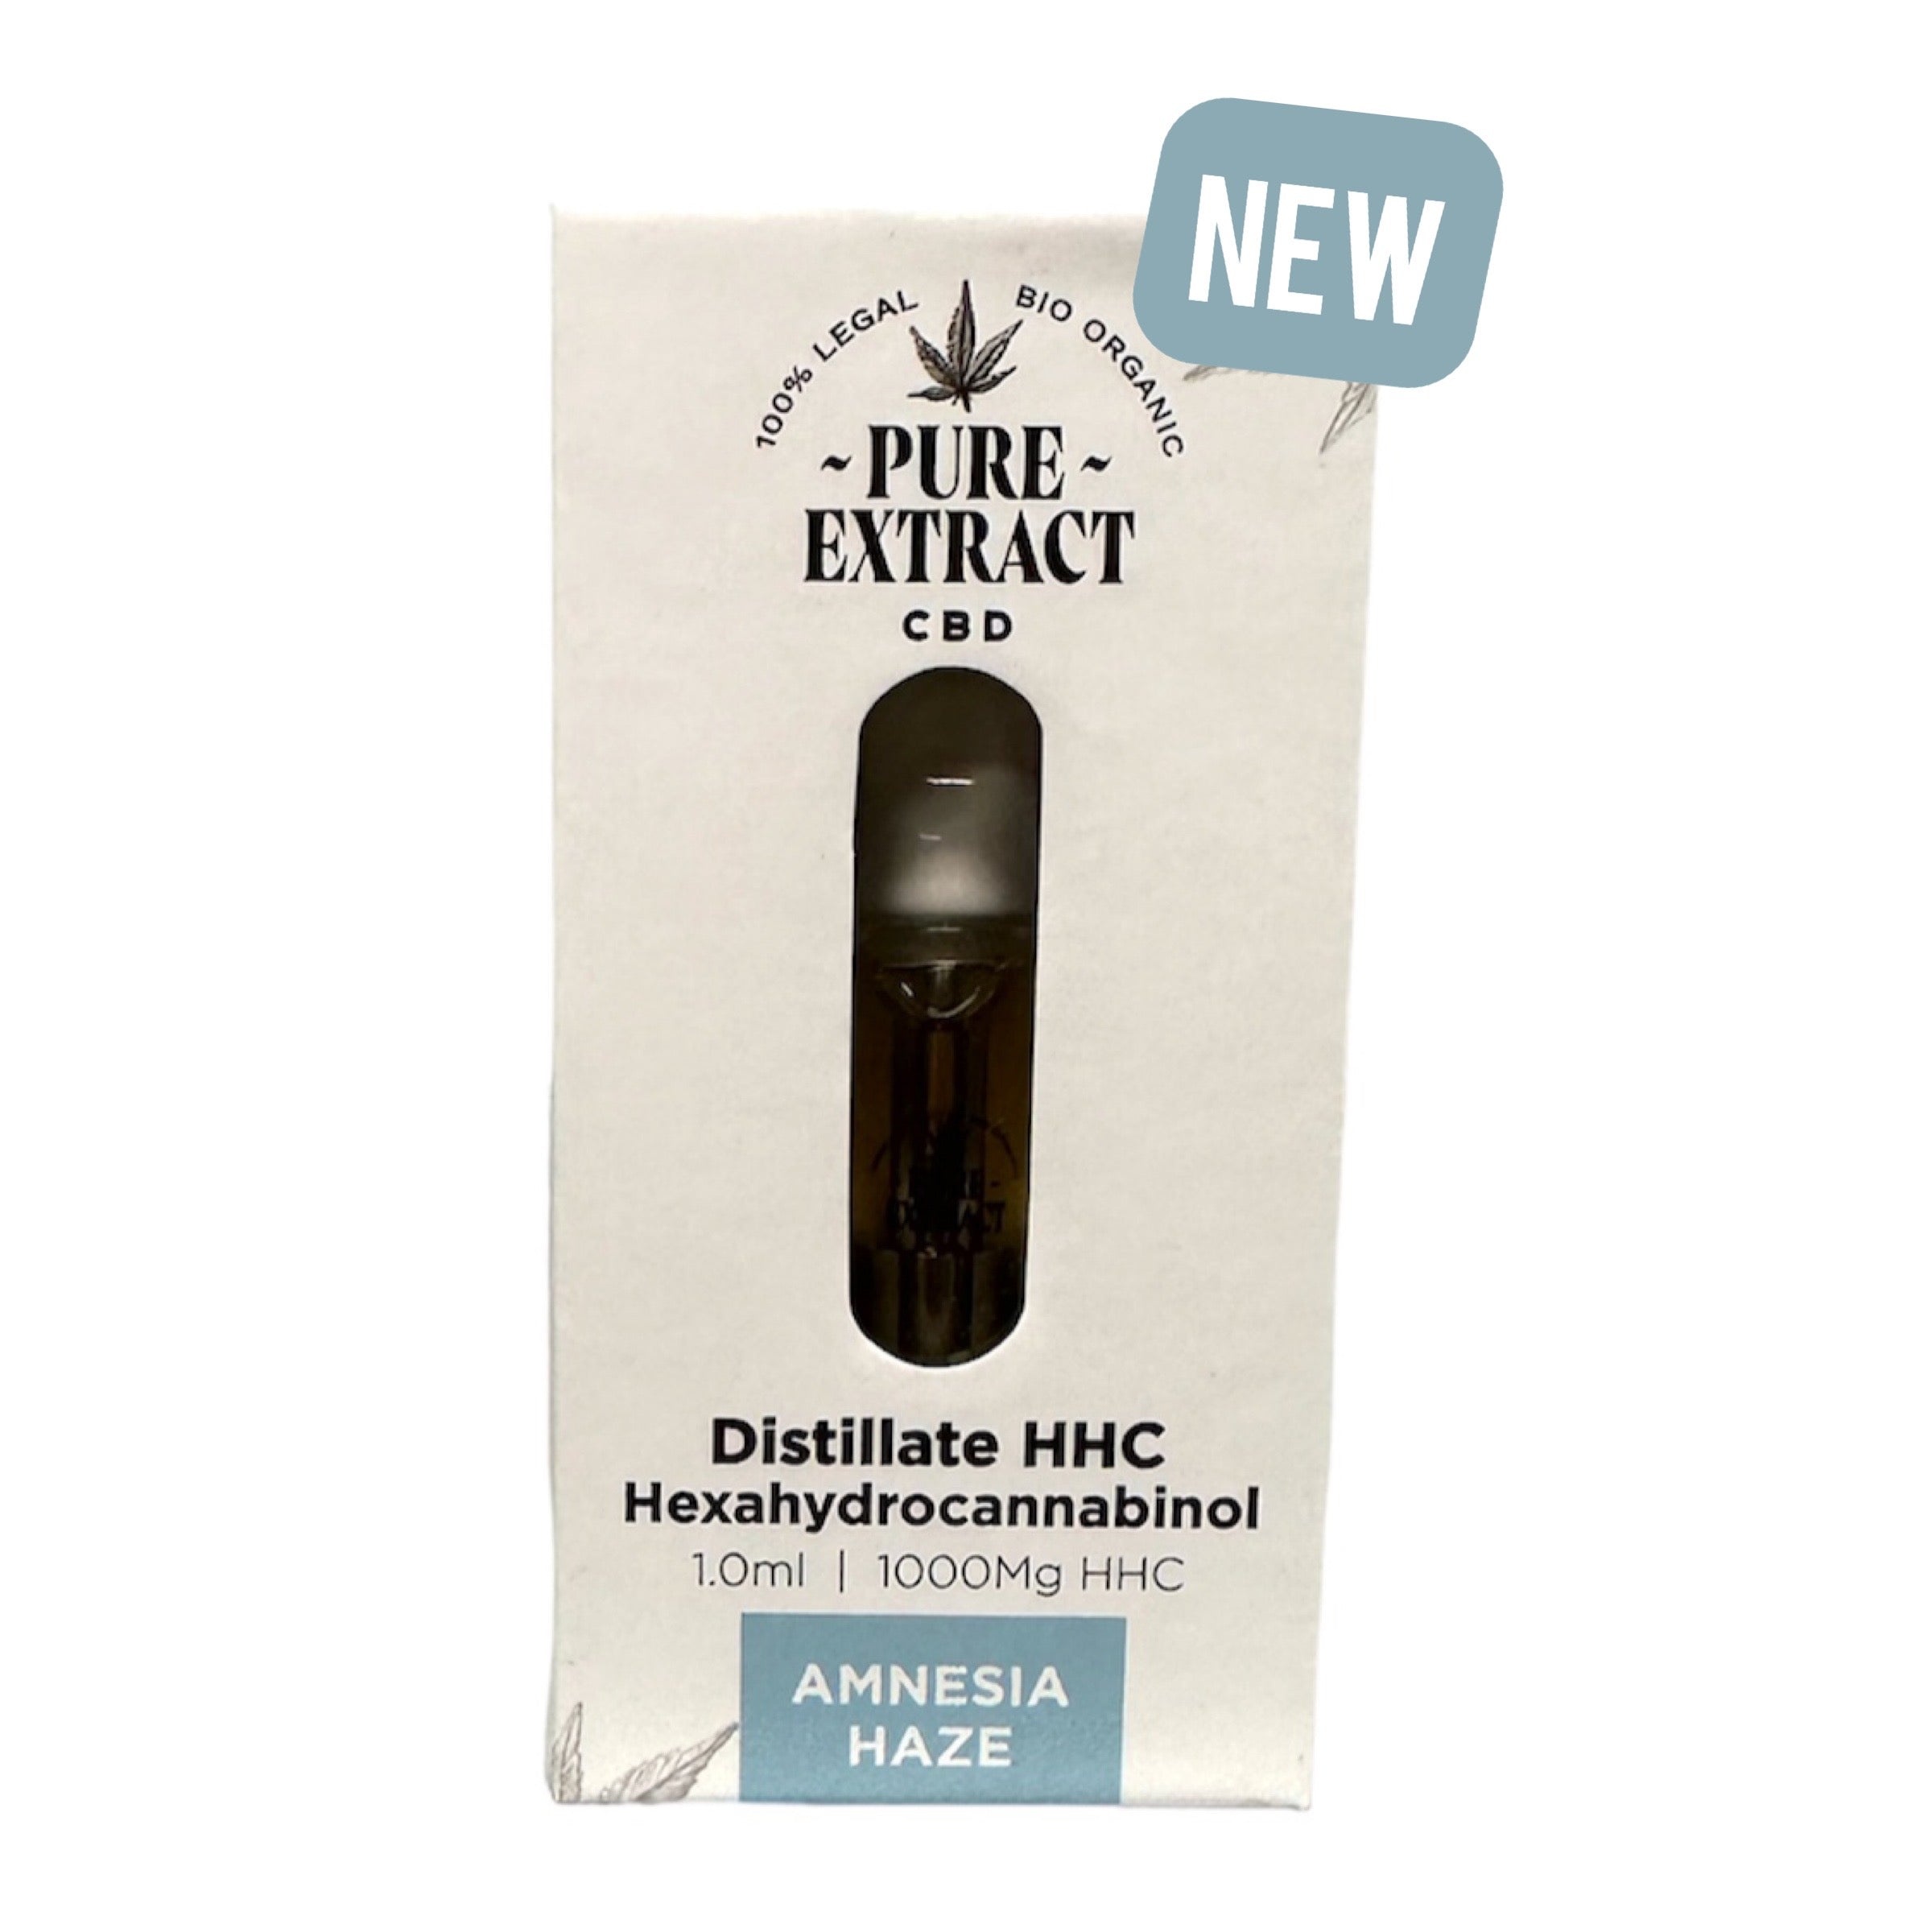 Cartouche (Dab Pen) De HHC Amnesia Haze - 95% HHC